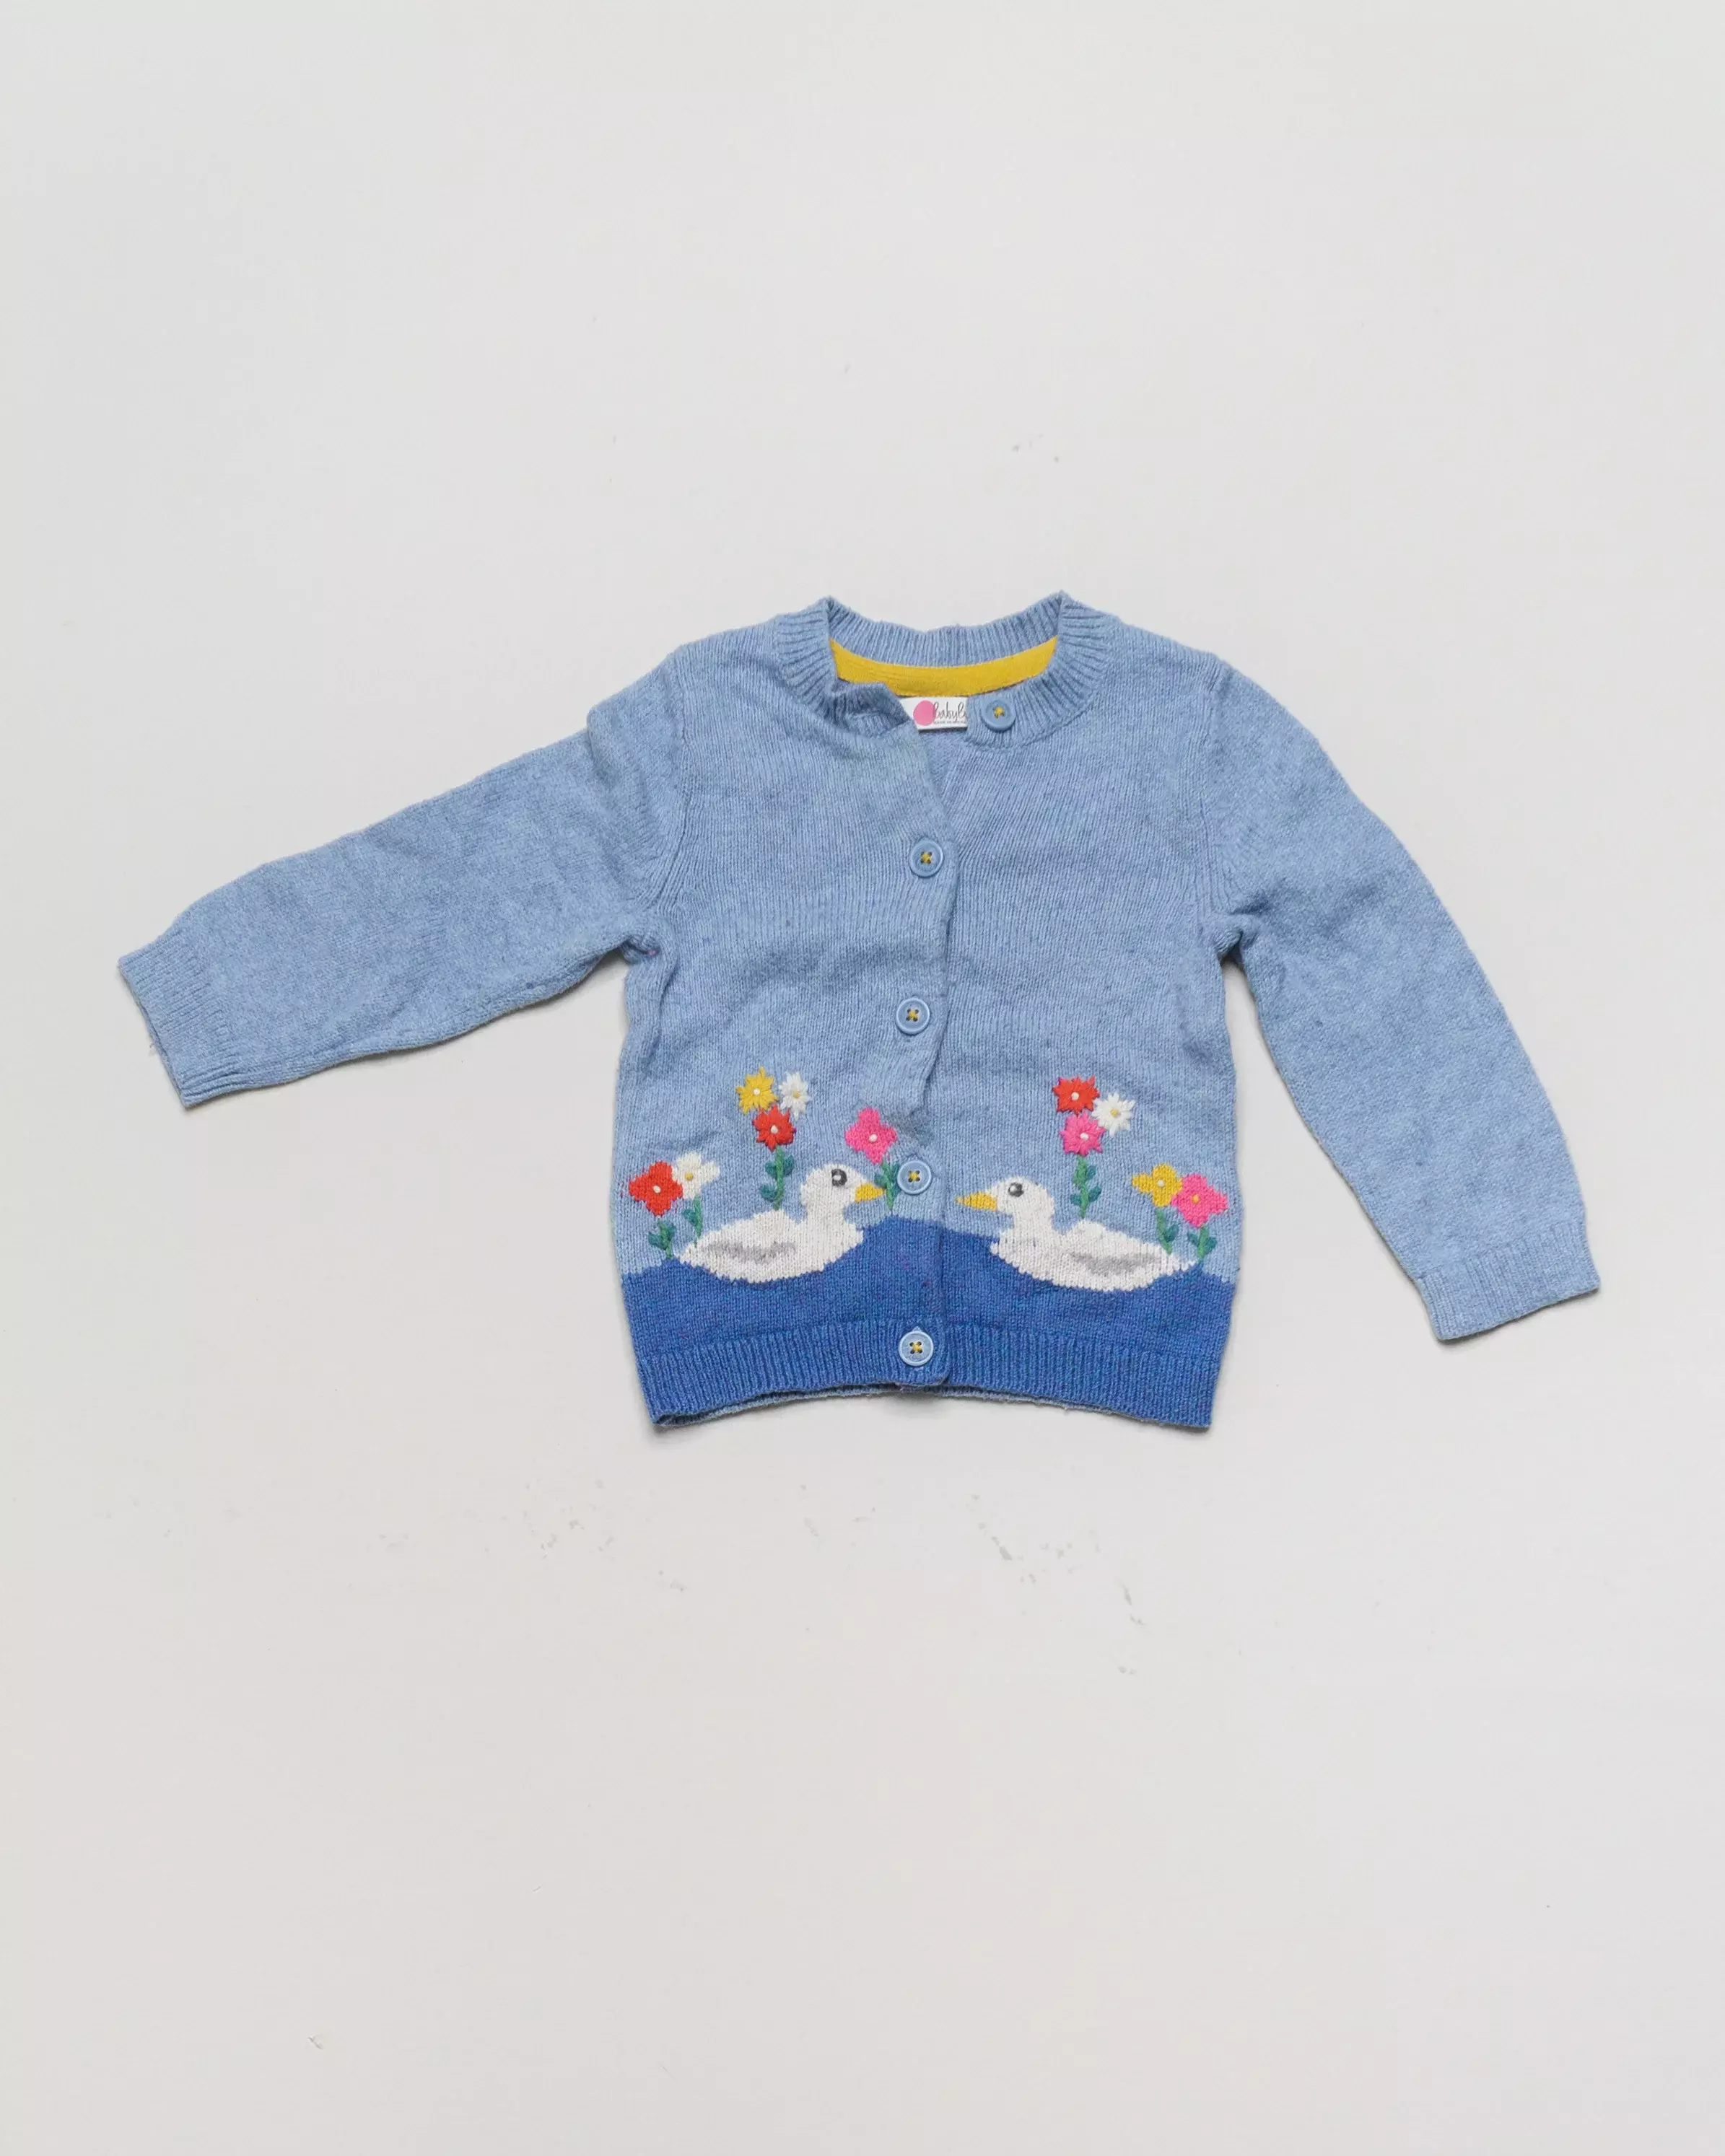 Strickjacke Gr. 80 – Baby Boden Strickjacke Enten hellblau Mädchen Tiere BabyBoden